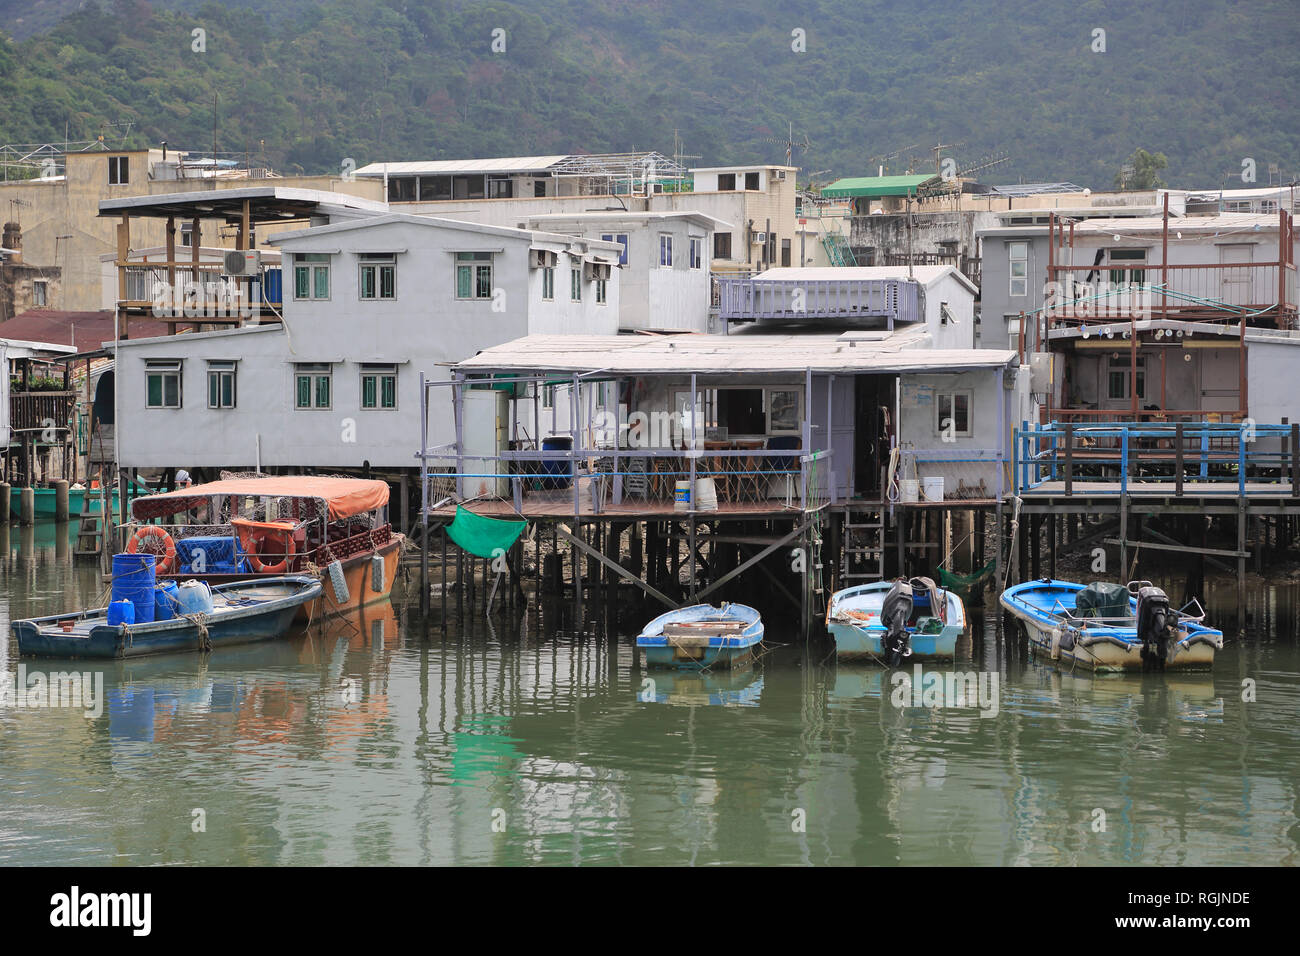 Des maisons sur pilotis, Canal, village de pêcheurs Tai O, Lantau Island, Hong Kong, Chine, Asie Banque D'Images